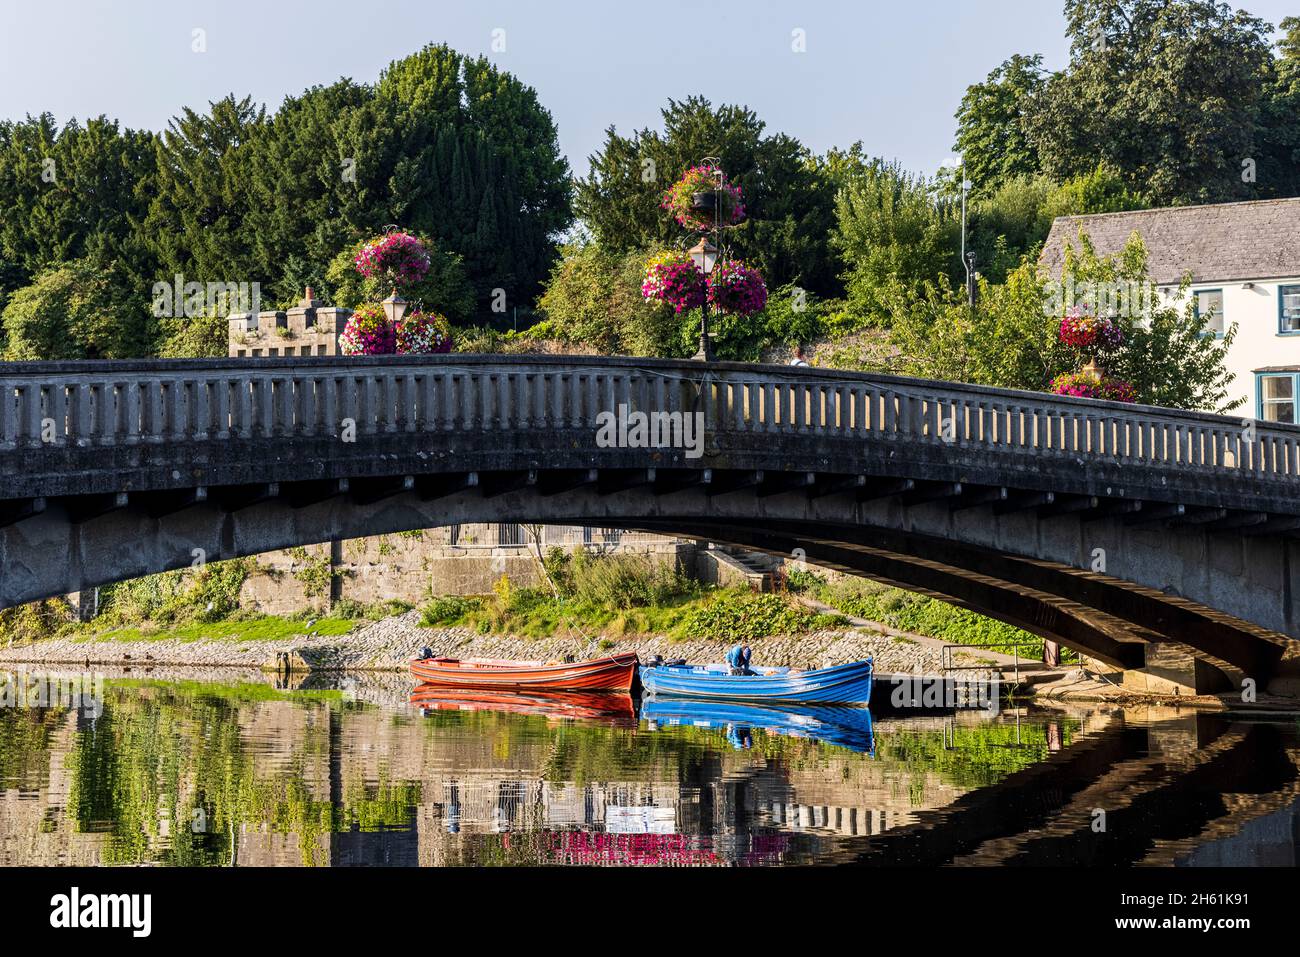 Pont de Saint Johns au-dessus de la rivière Nore avec des paniers de fleurs en été, Kilkenny, comté de Kilkenny, Irlande Banque D'Images